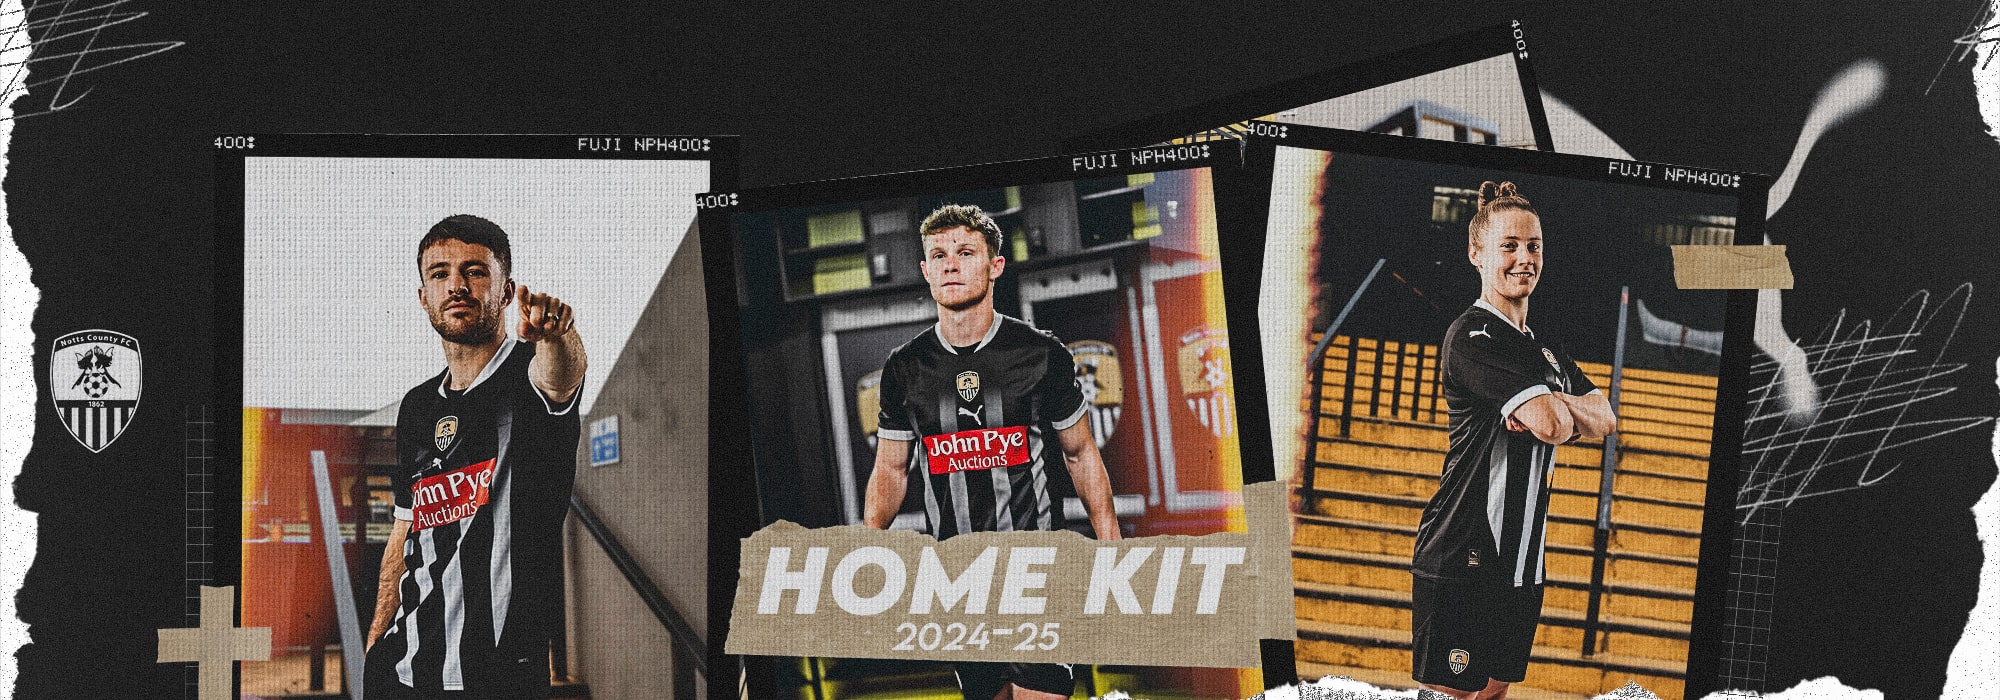 Home Kit 2024-25